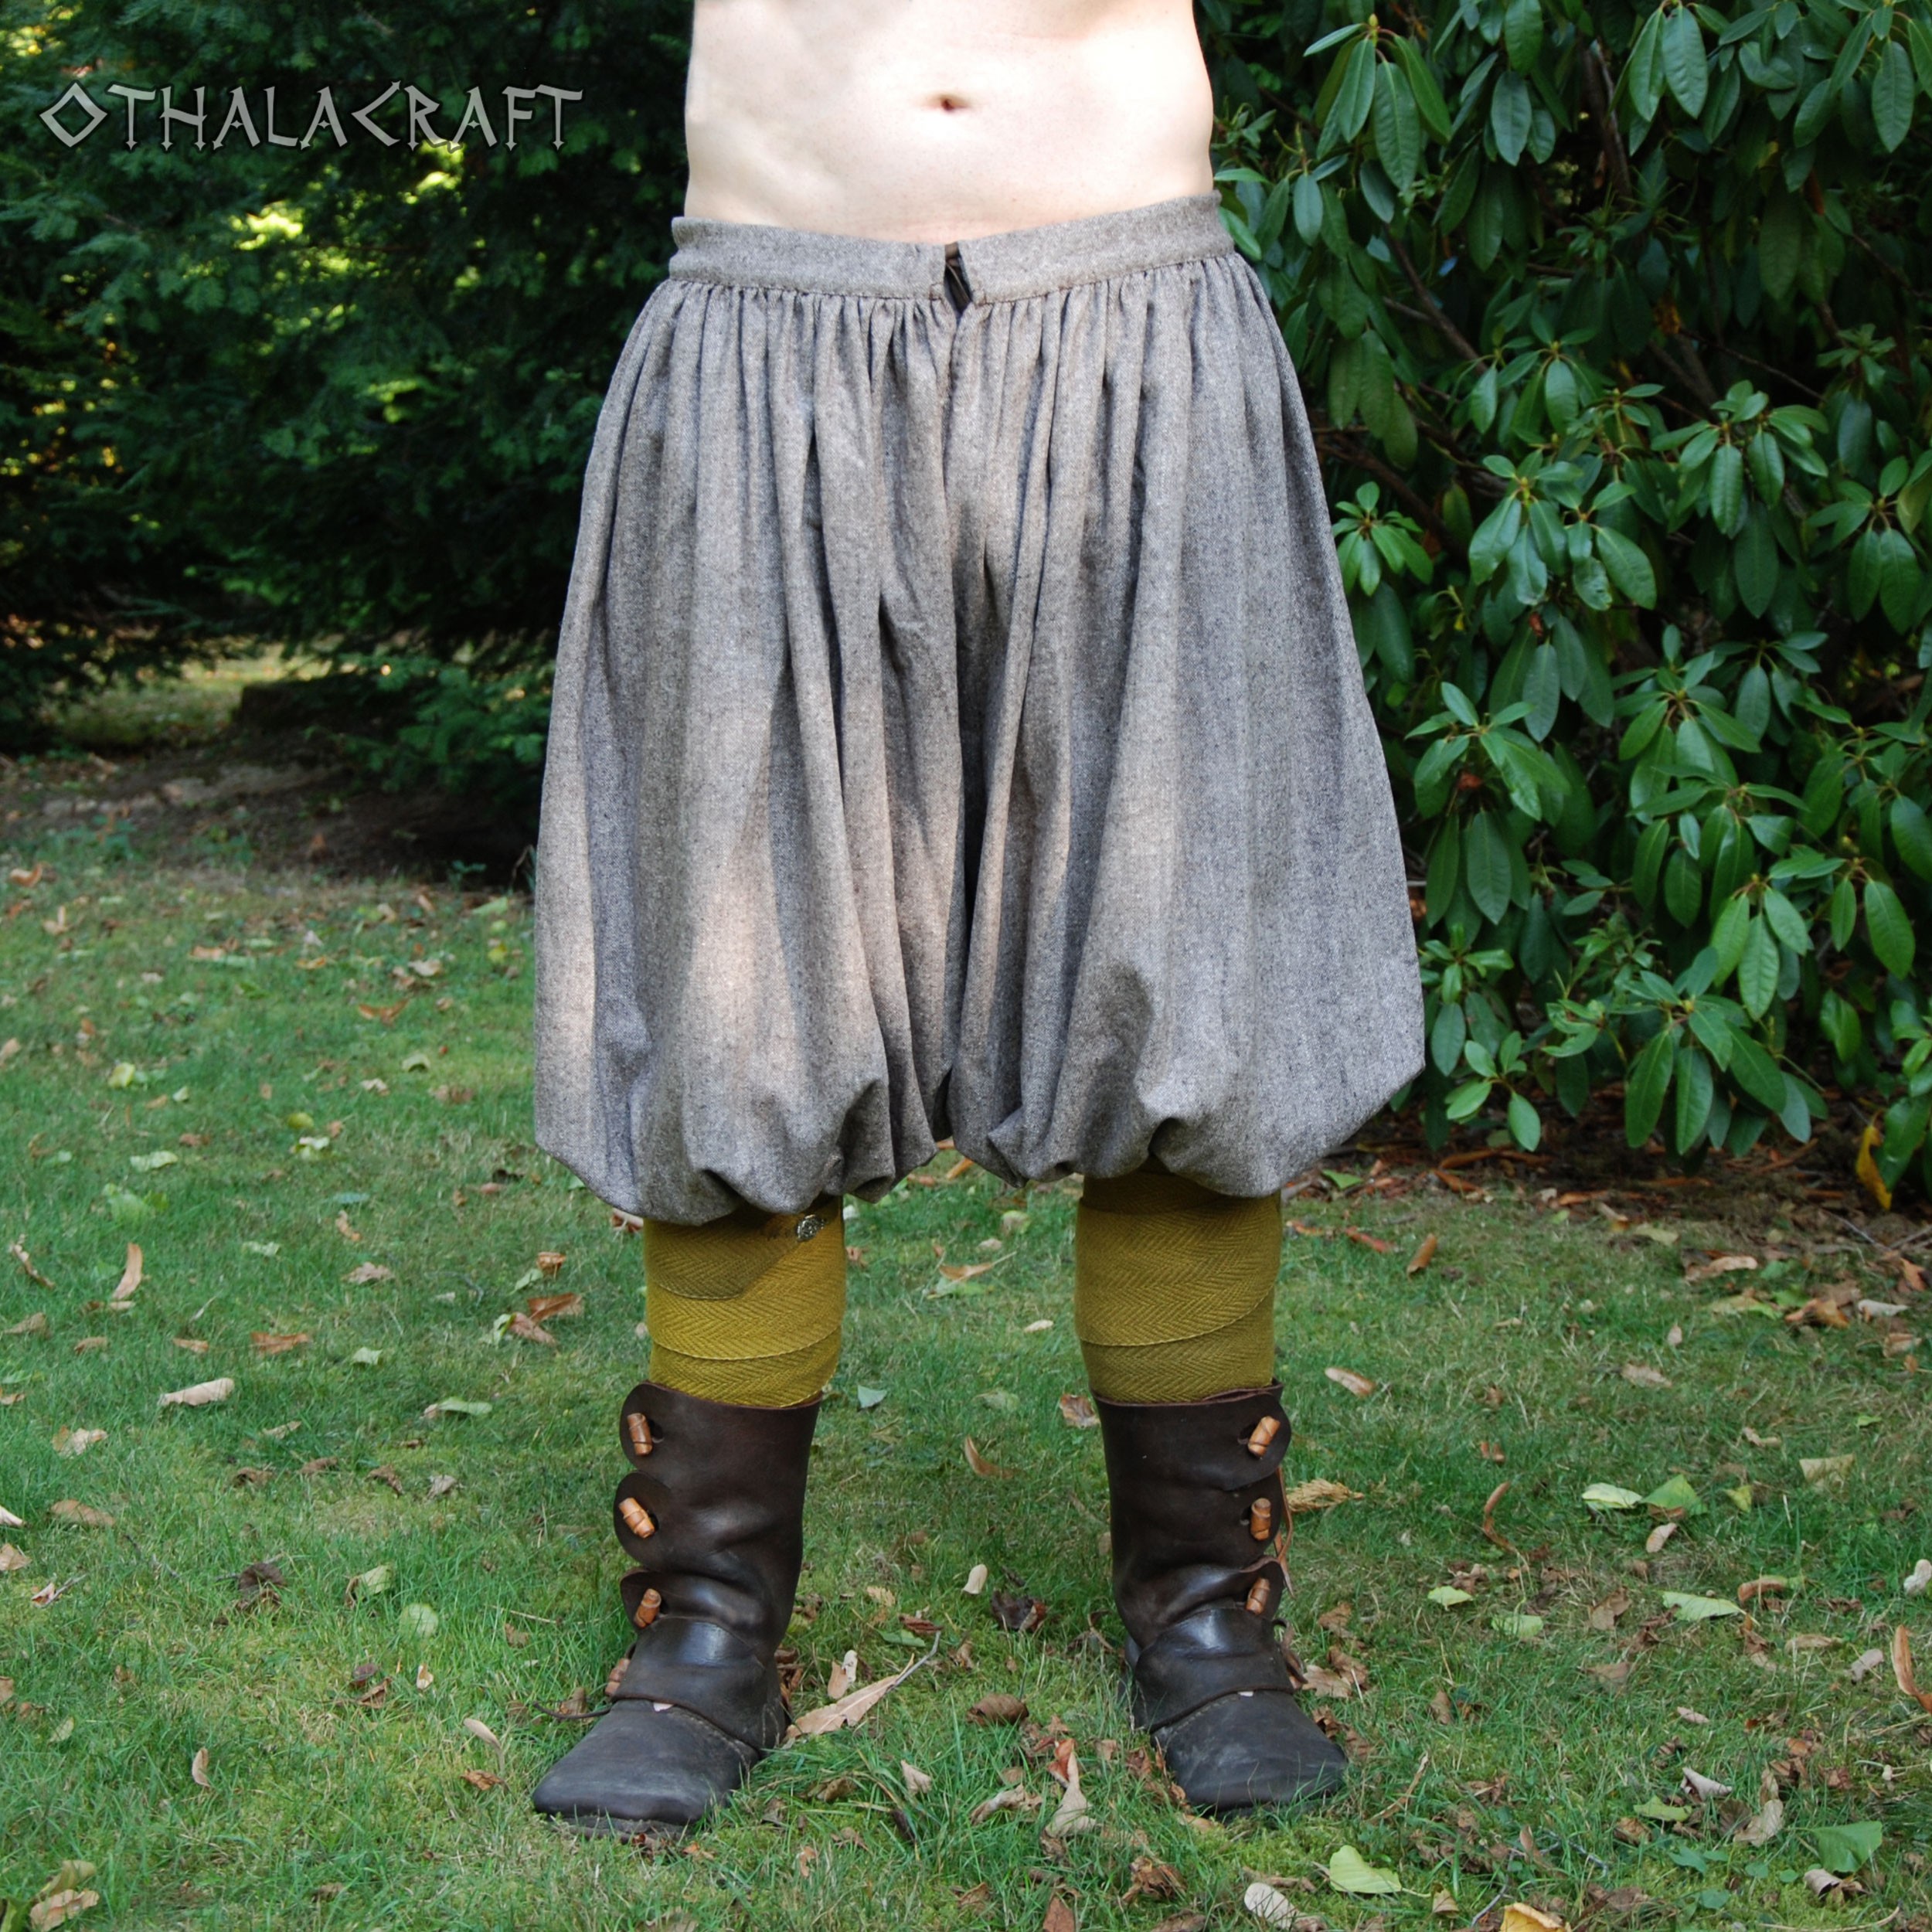 Viking Trousers